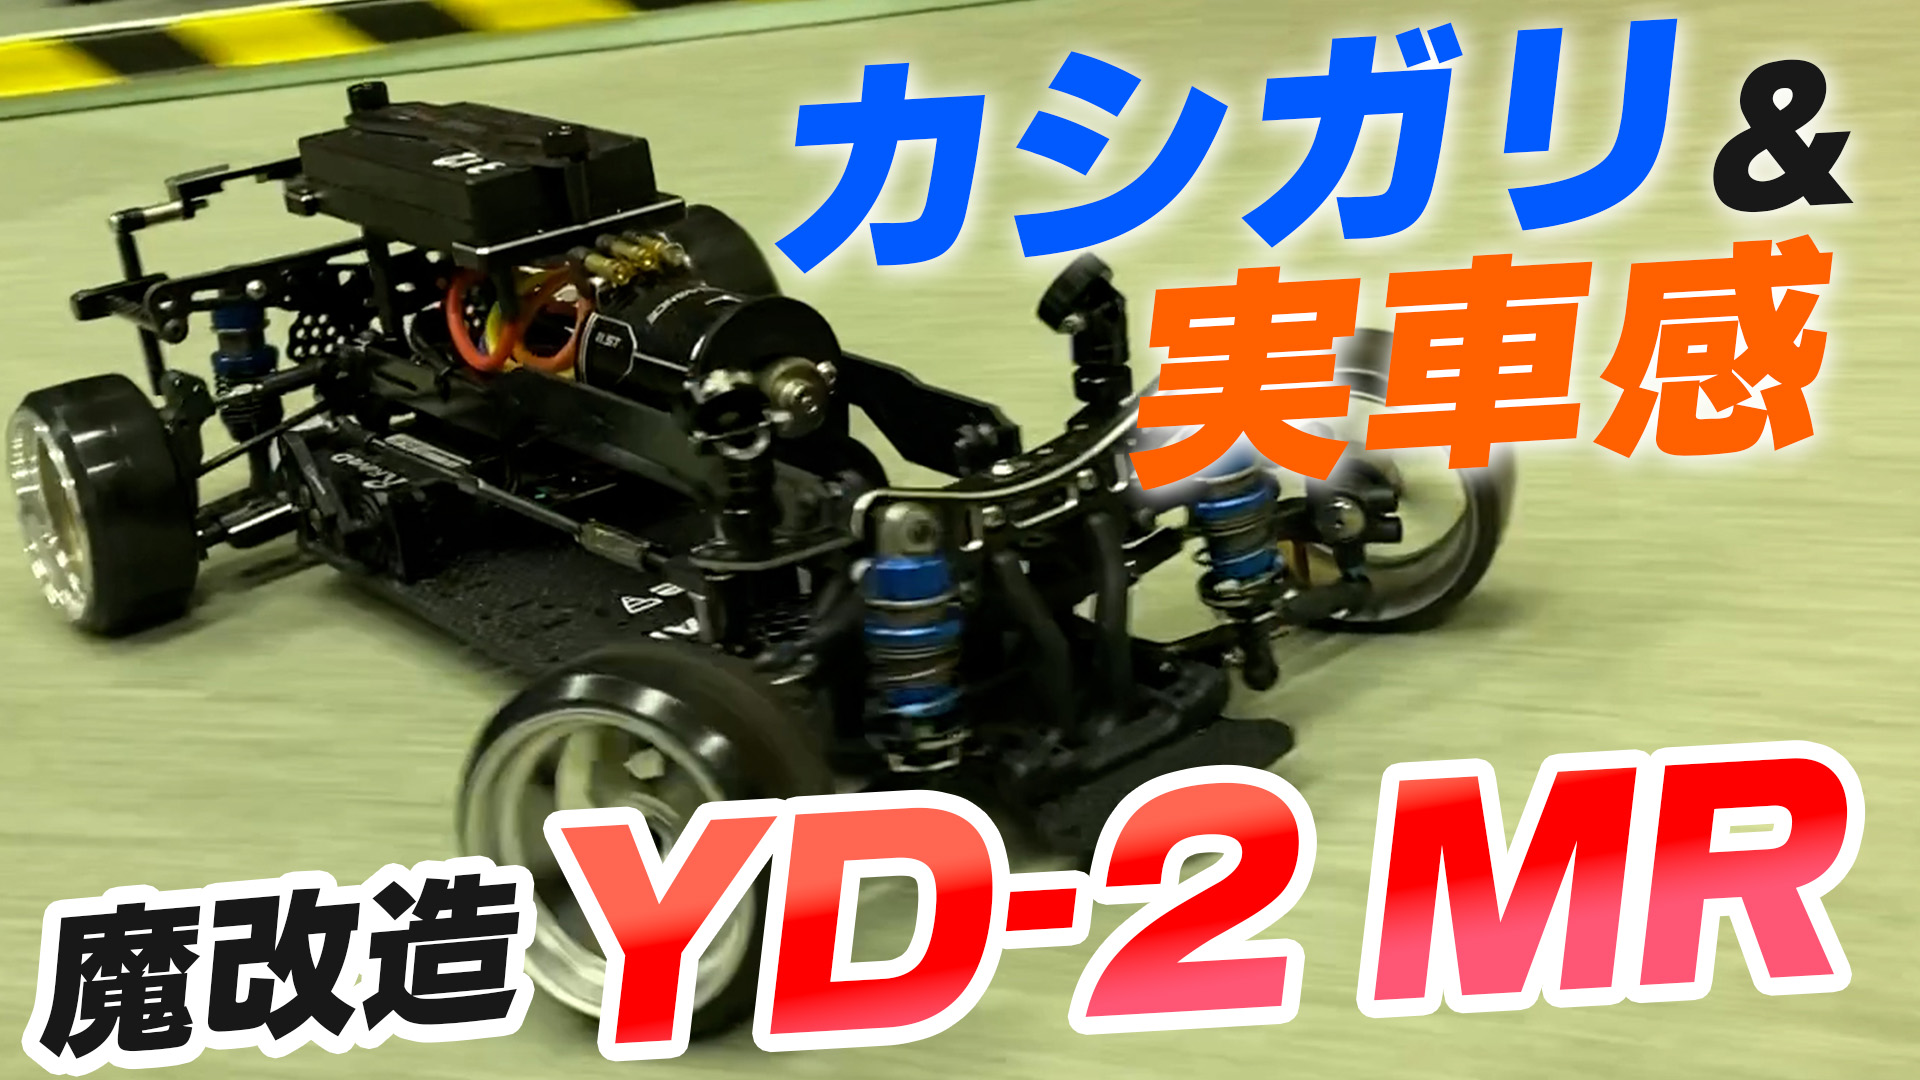 YD-2 MR！魔改造ミッドシップモーターで実車感とカシガリを実現 